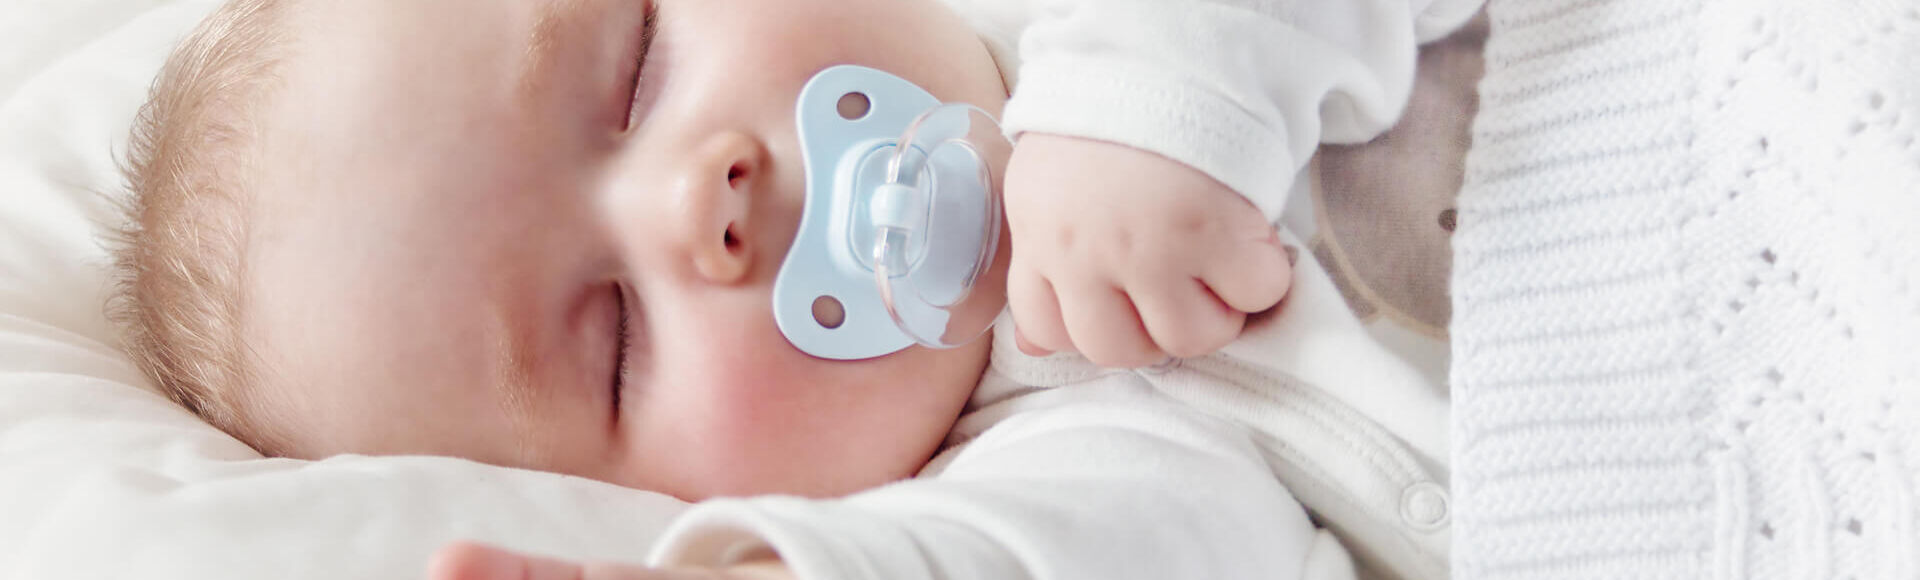 Cómo dormir a un recién nacido